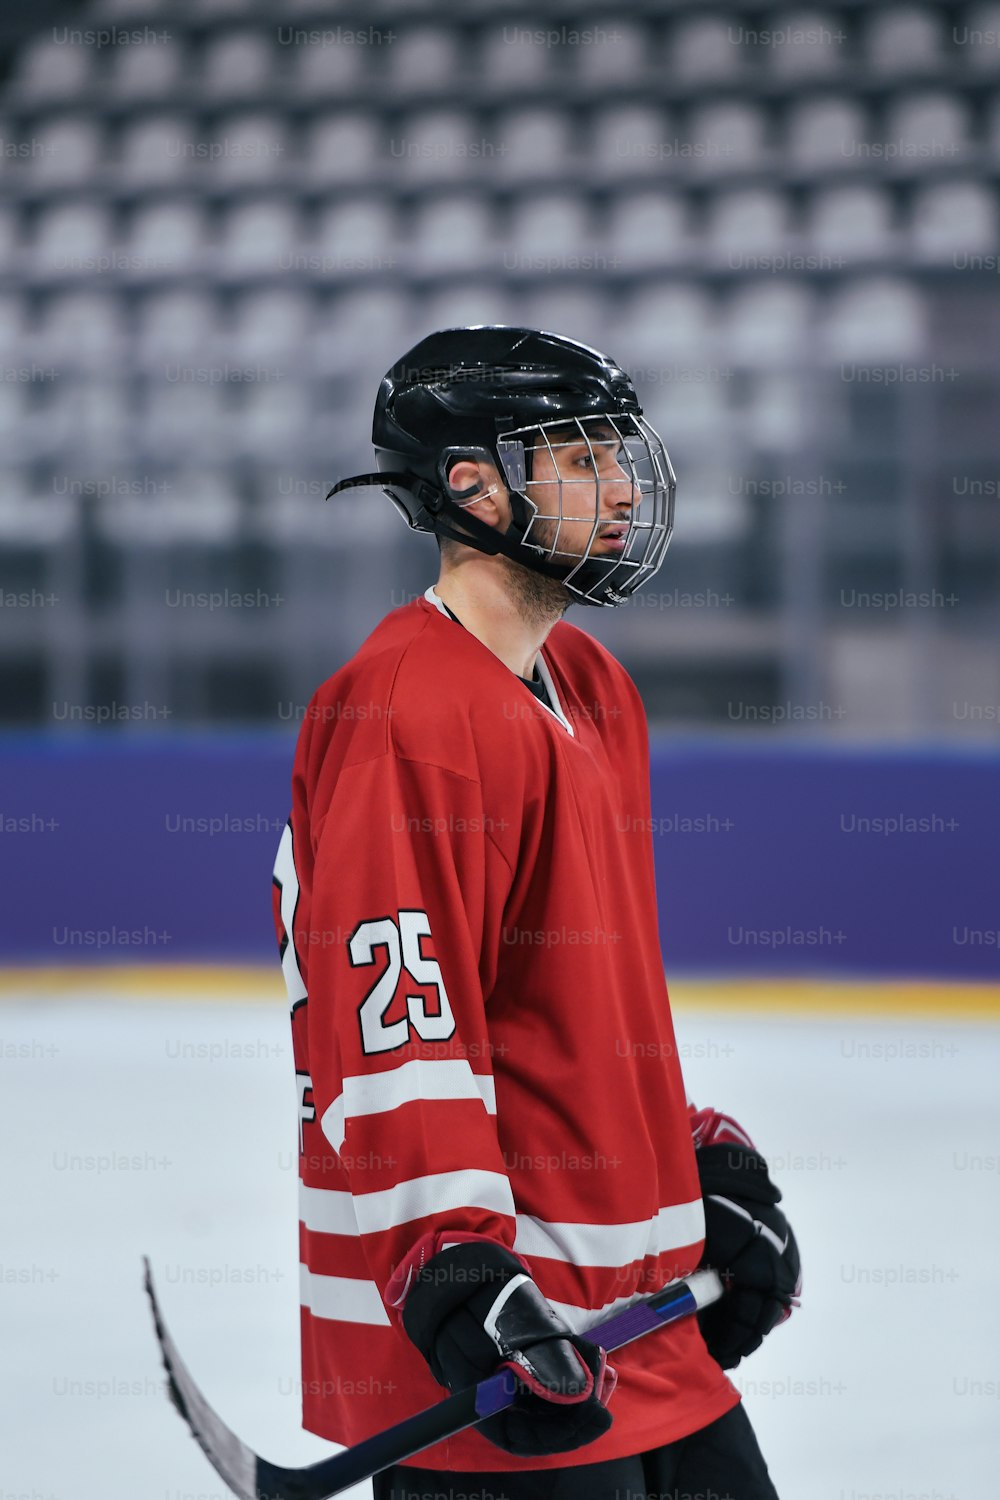 Un hombre con una camiseta roja sosteniendo un palo de hockey